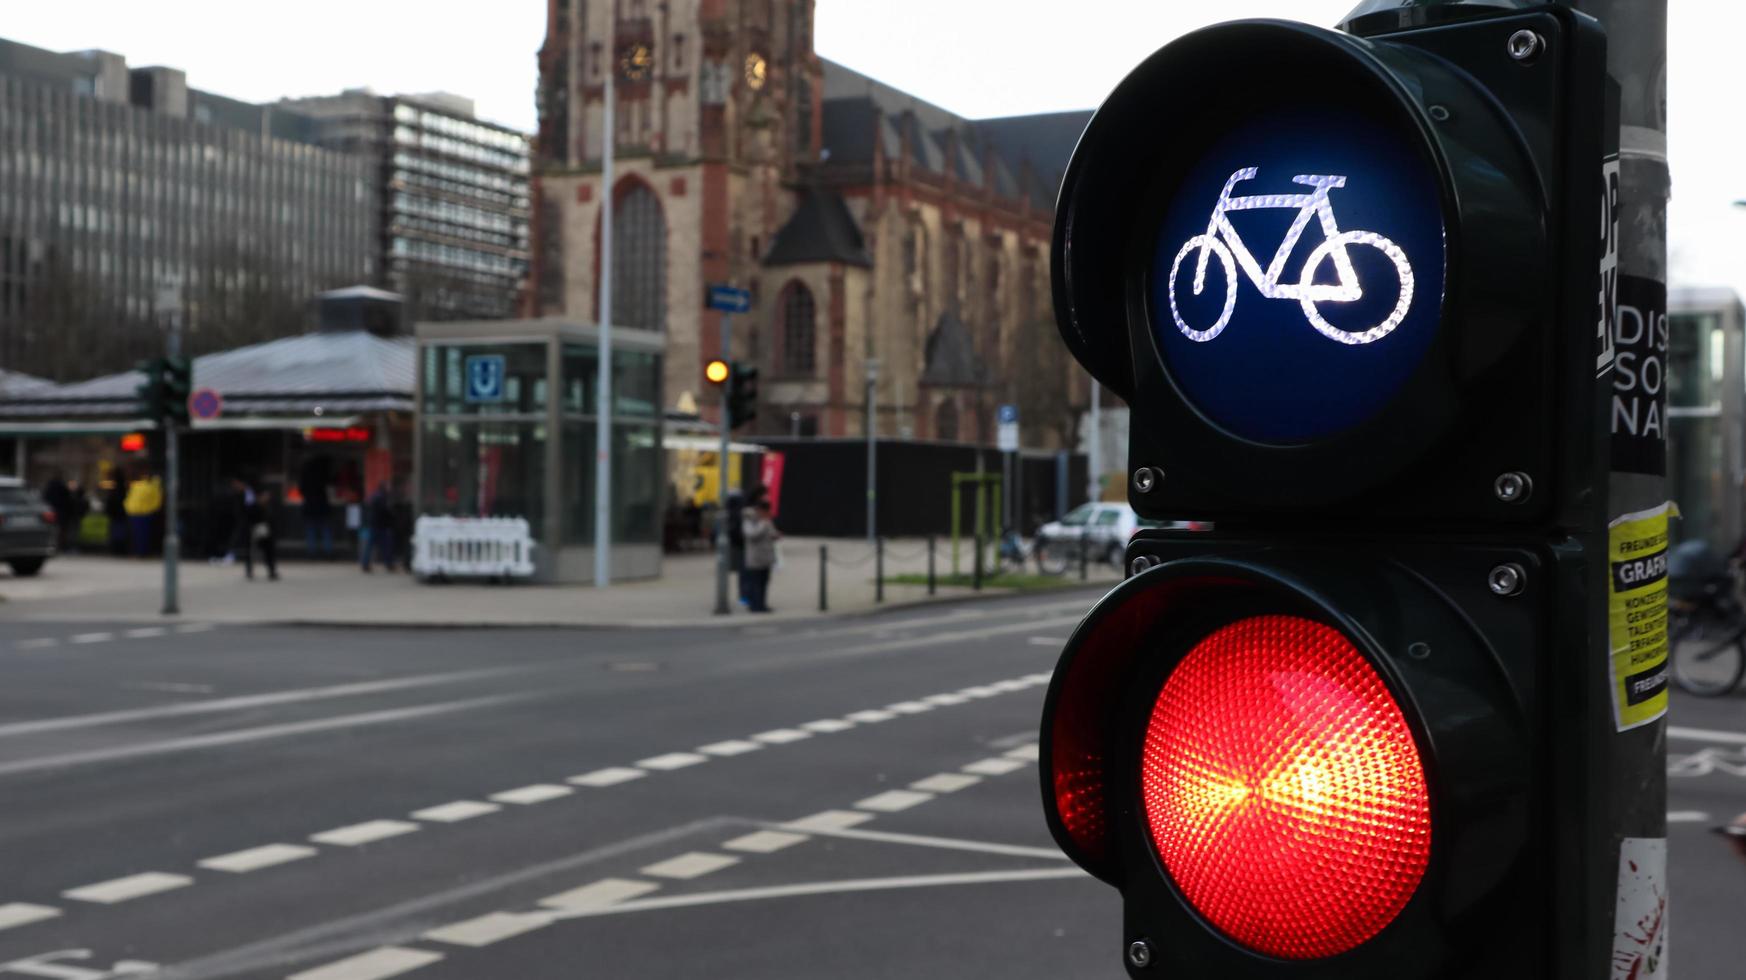 dusseldorf, germania - 28 febbraio 2020. primo piano semaforo per biciclette con una città trafficata sullo sfondo a un bivio in germania. i ciclisti aspettano che un semaforo attraversi la strada. foto